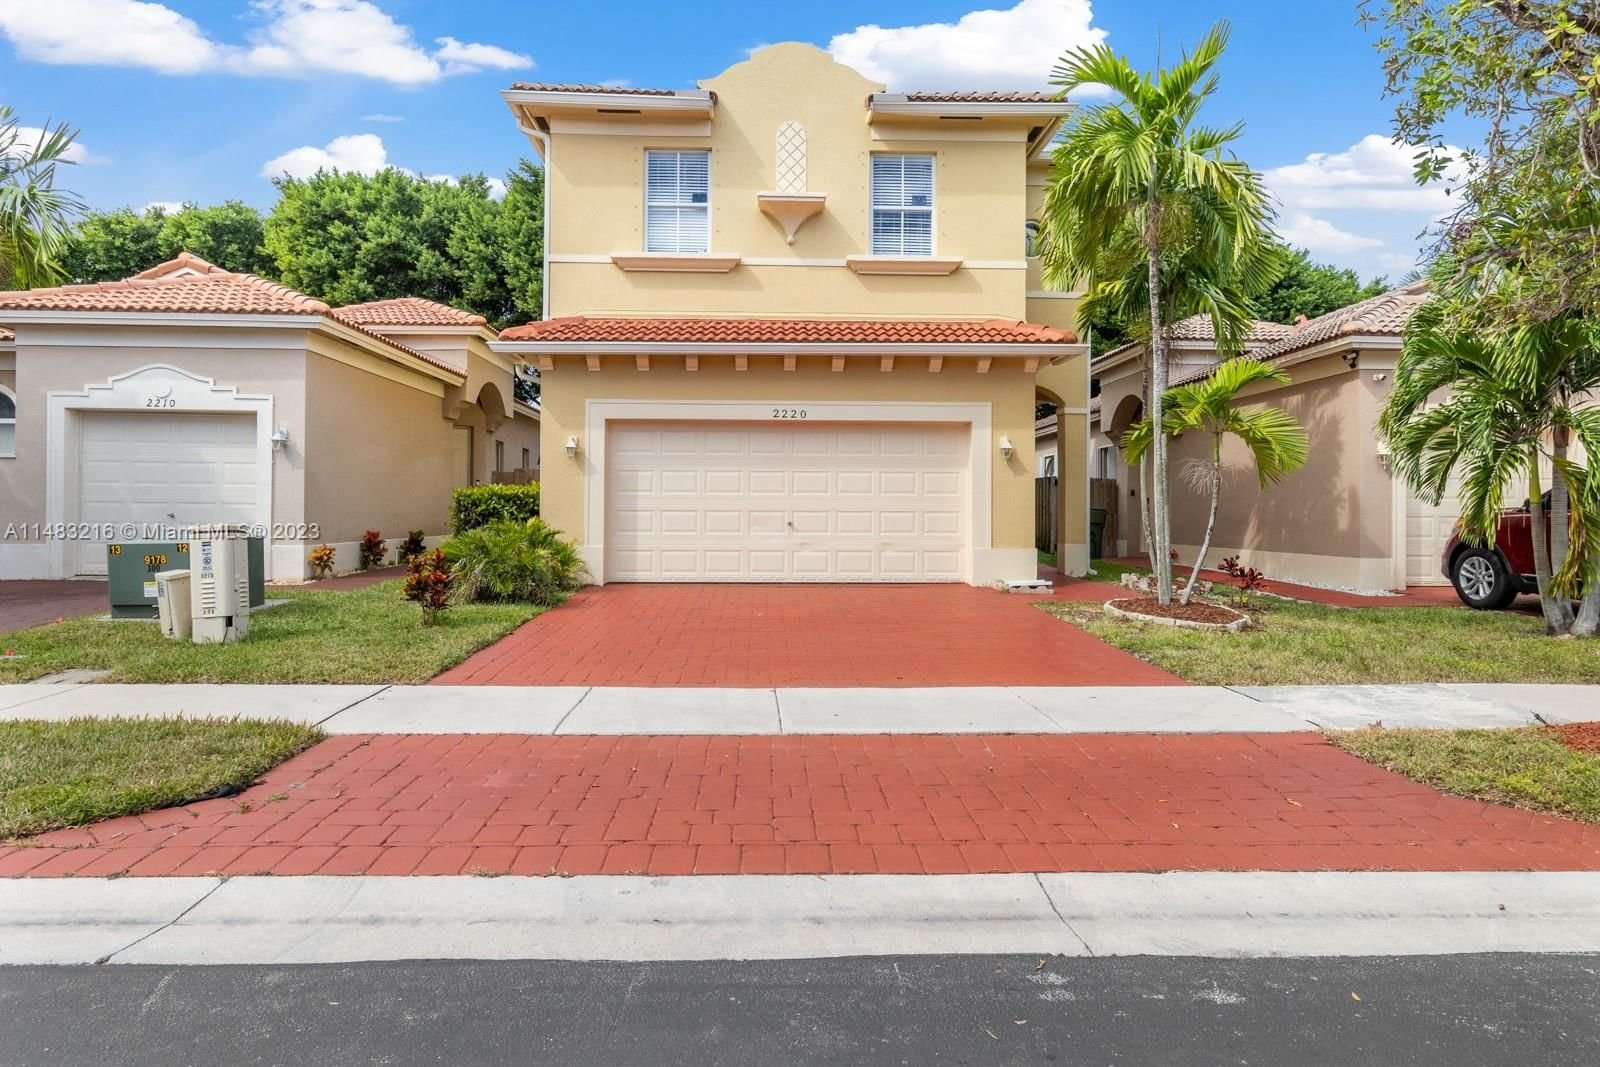 Real estate property located at 2220 37th Ter, Miami-Dade County, PORTOFINO BAY, Homestead, FL